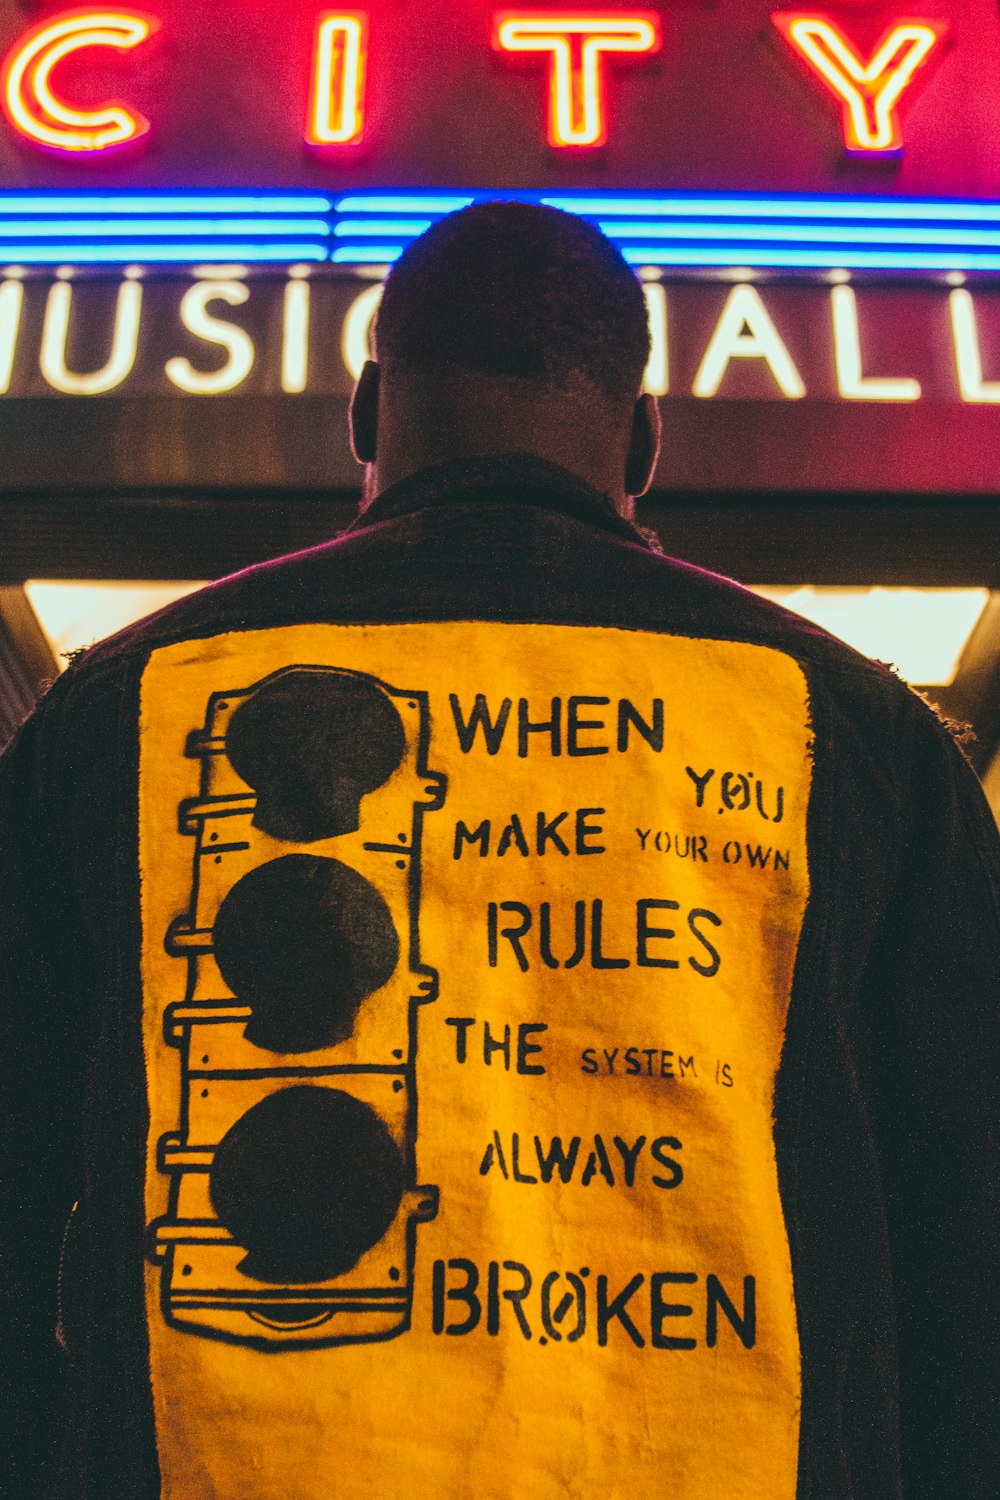 Un hombre parado frente a una sala de música de la ciudad